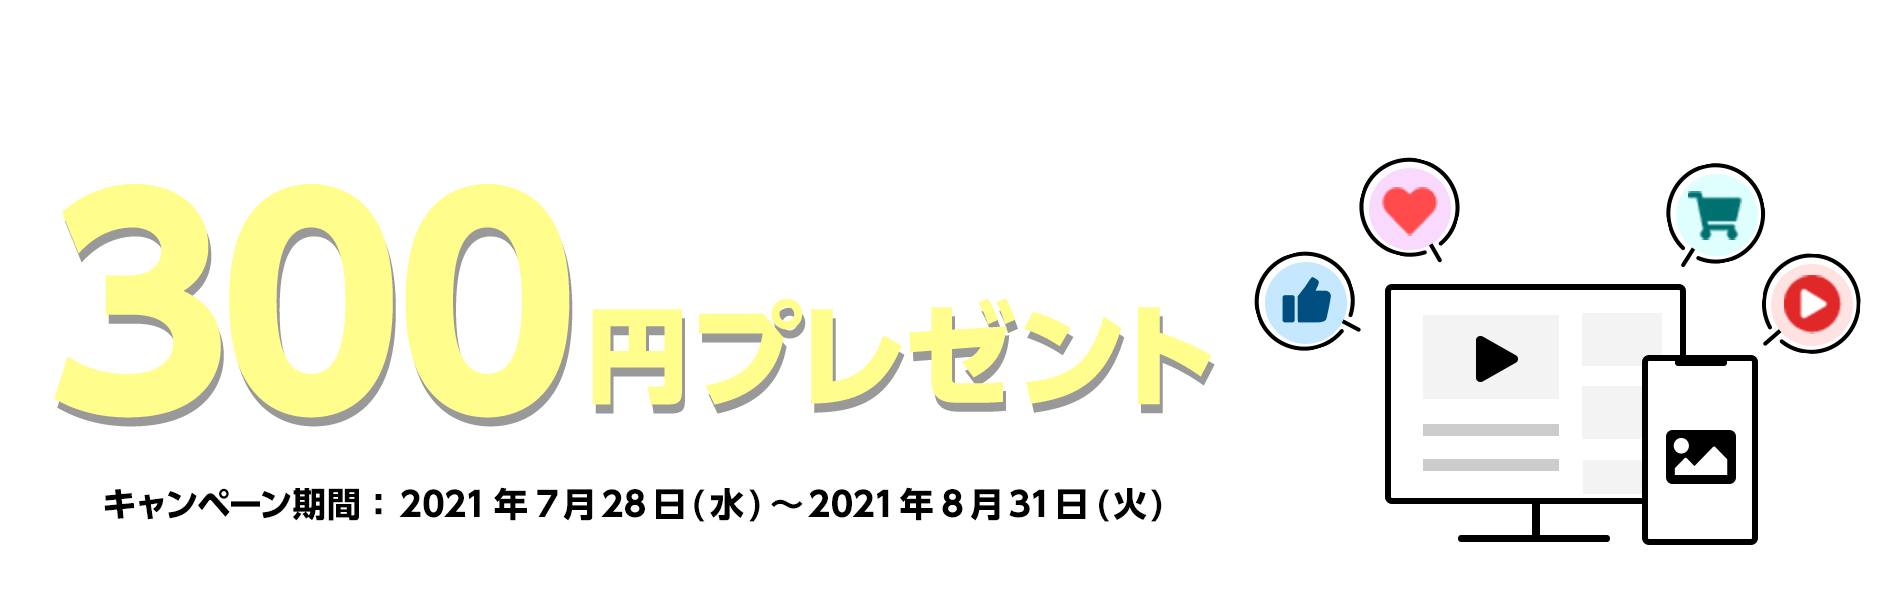 『SNS掲載用アカウント』に登録、サイト追加につき300円がもらえる！サイト登録キャンペーン